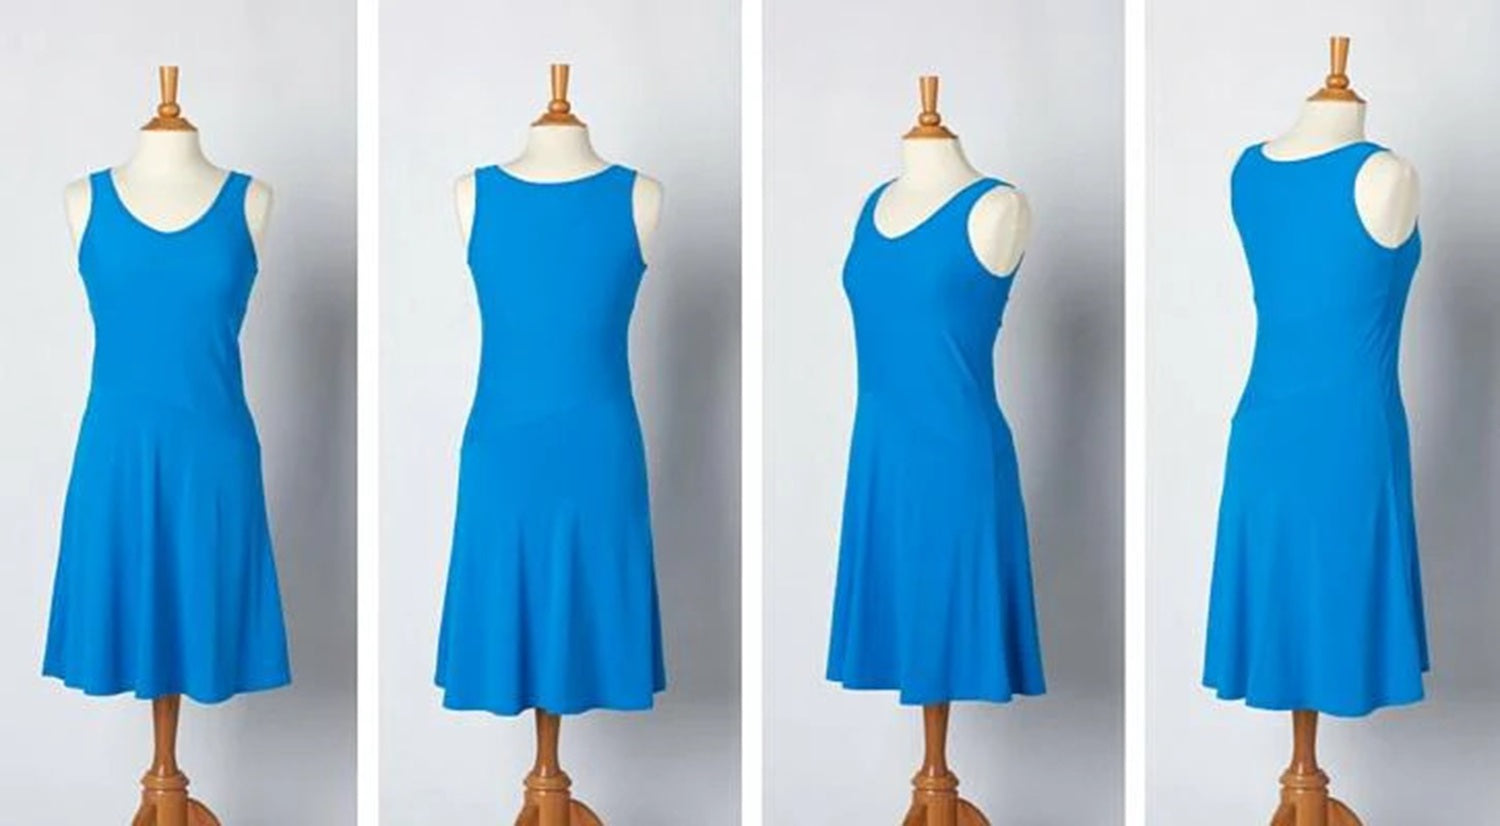 Ein blaues Kleid auf einer Modepuppe wird aus drei verschiedenen Perspektiven dargestellt, nachdem die Kleidung fotografiert wurde.